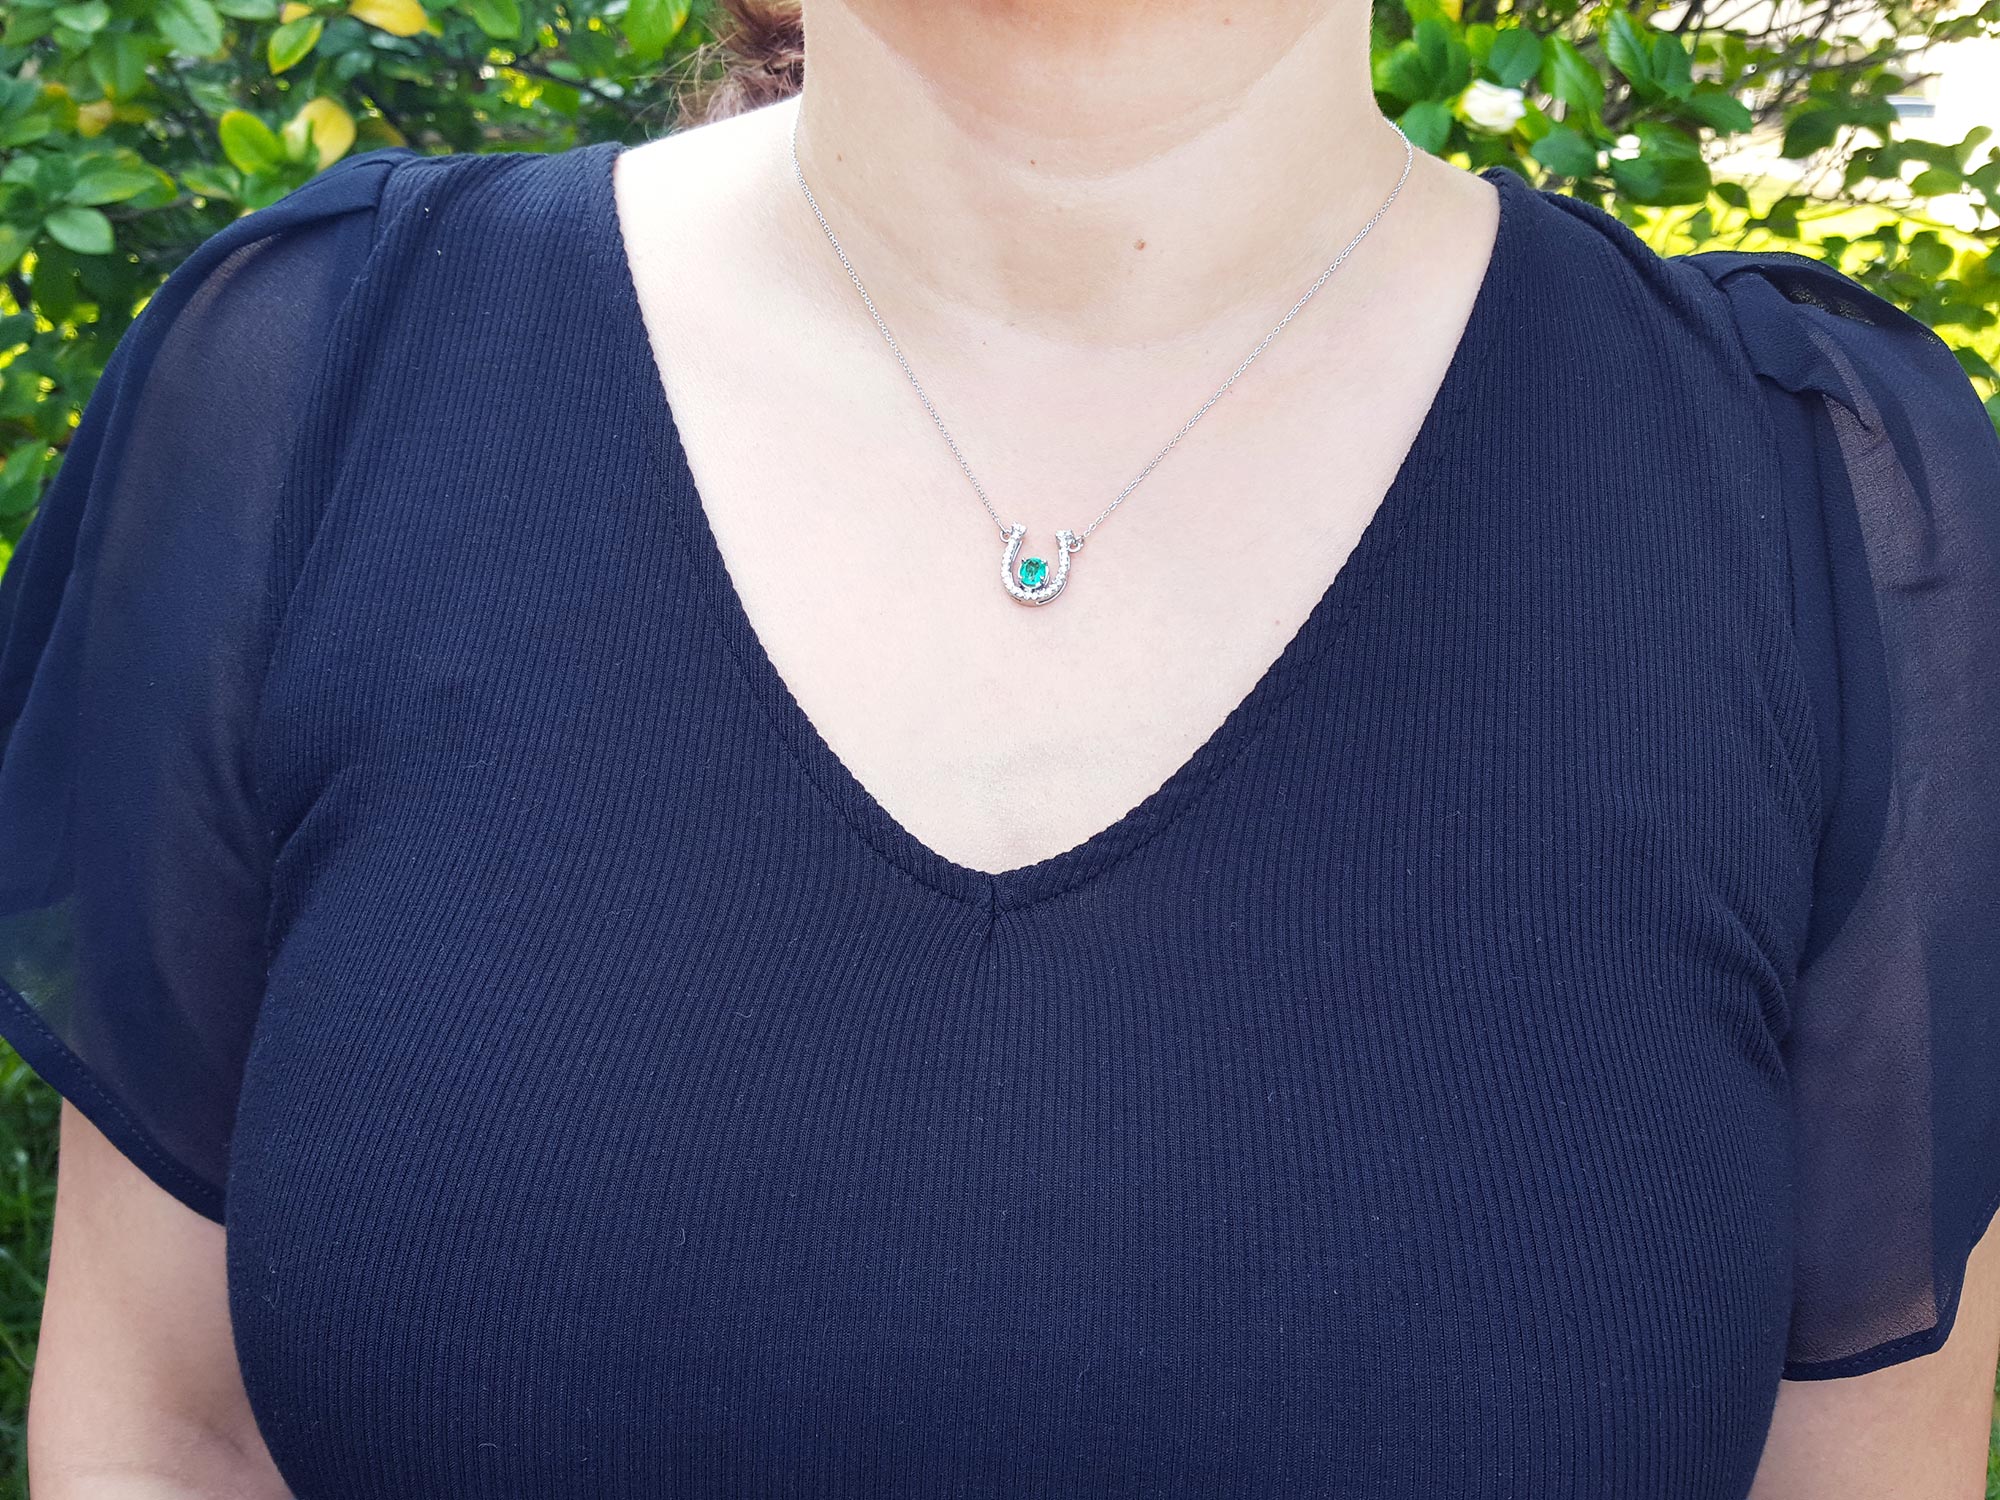 Horseshoe natural emerald necklace